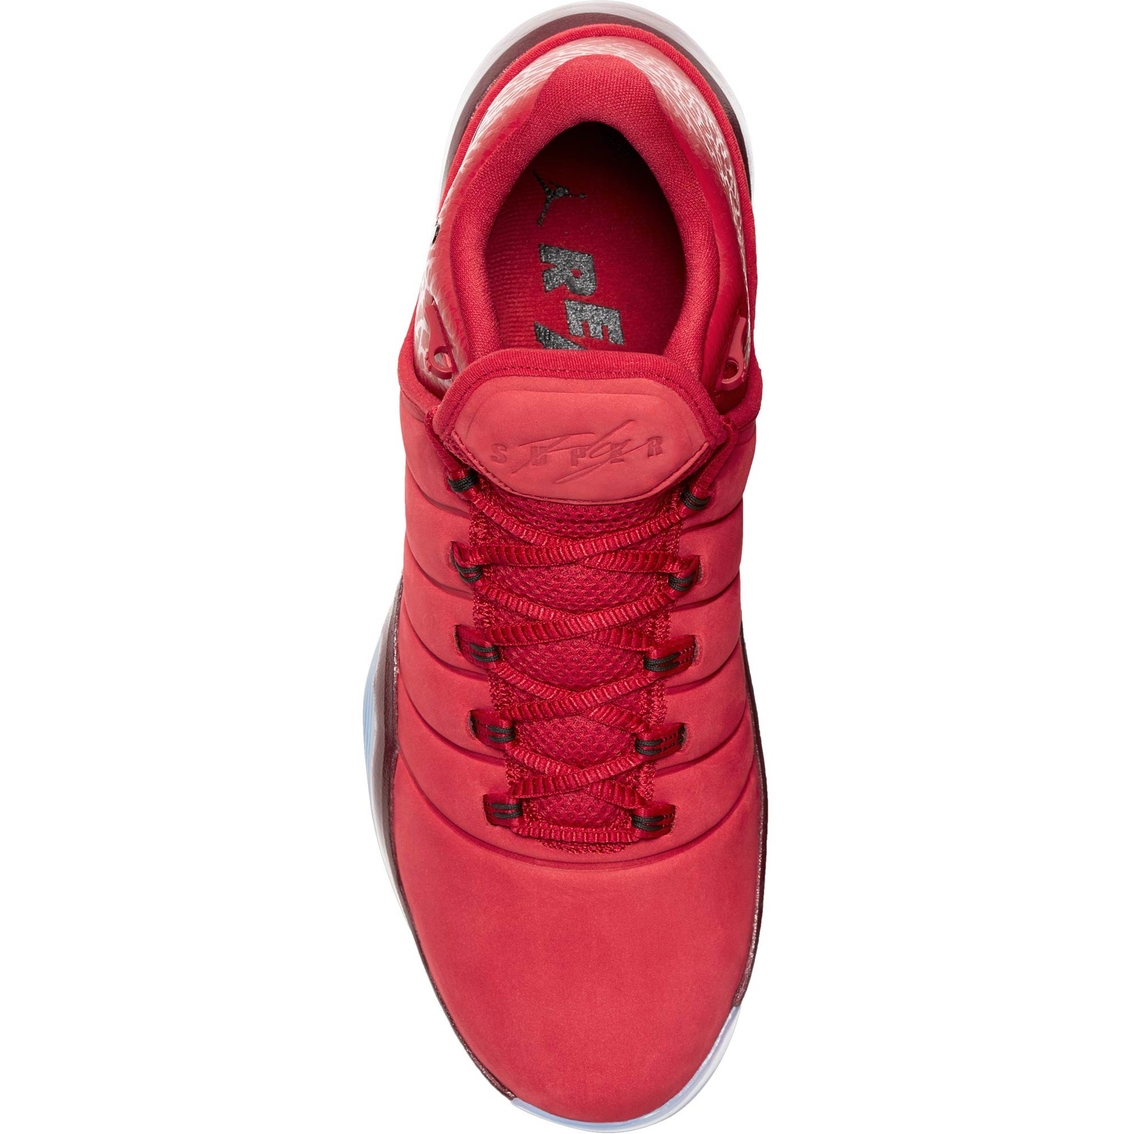 Jordan Men's Super Fly Basketball Shoes - Image 3 of 4